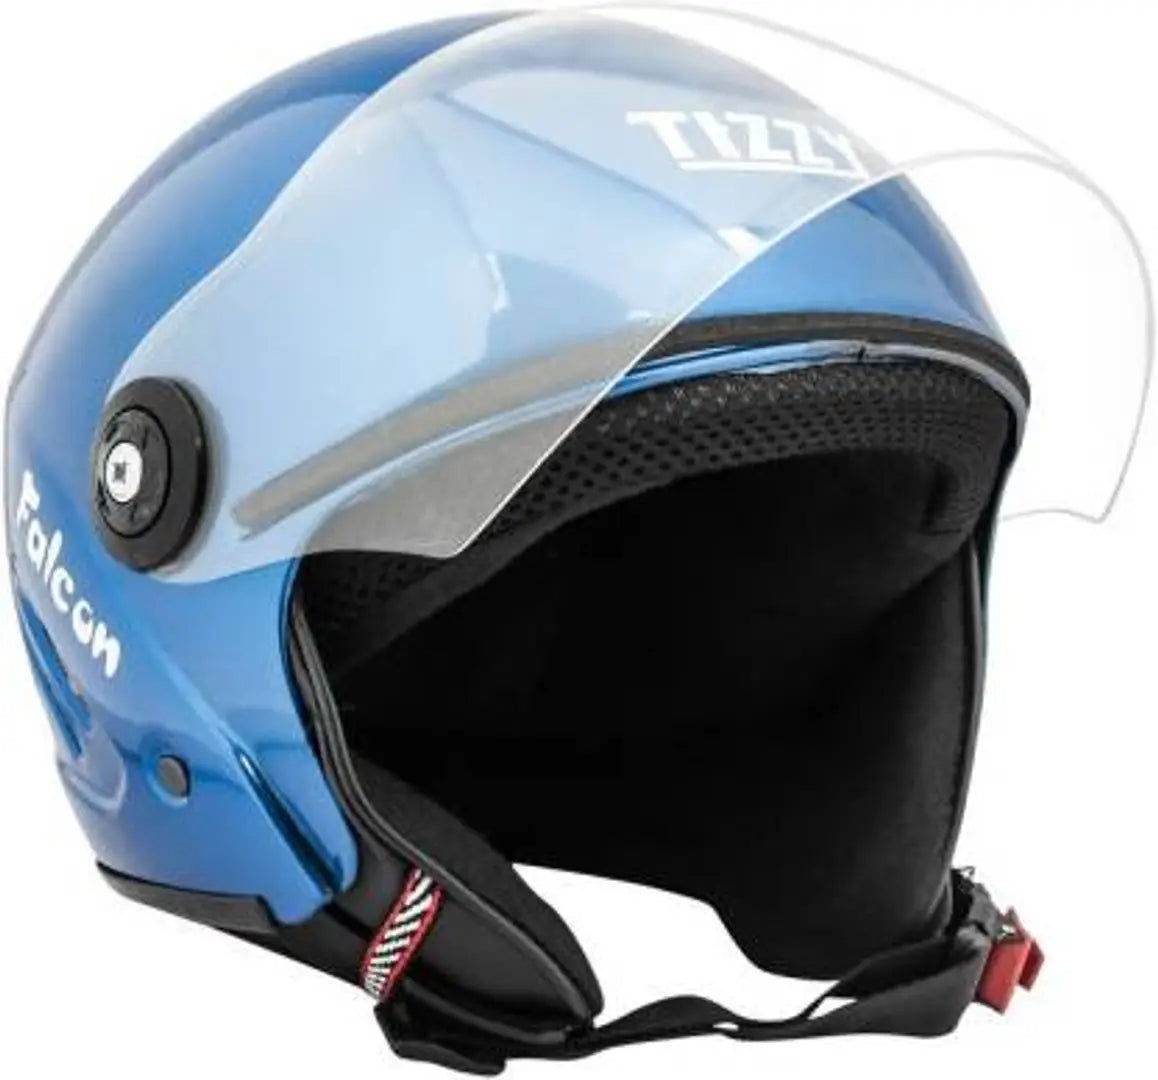 Modern Motorcycle Helmets